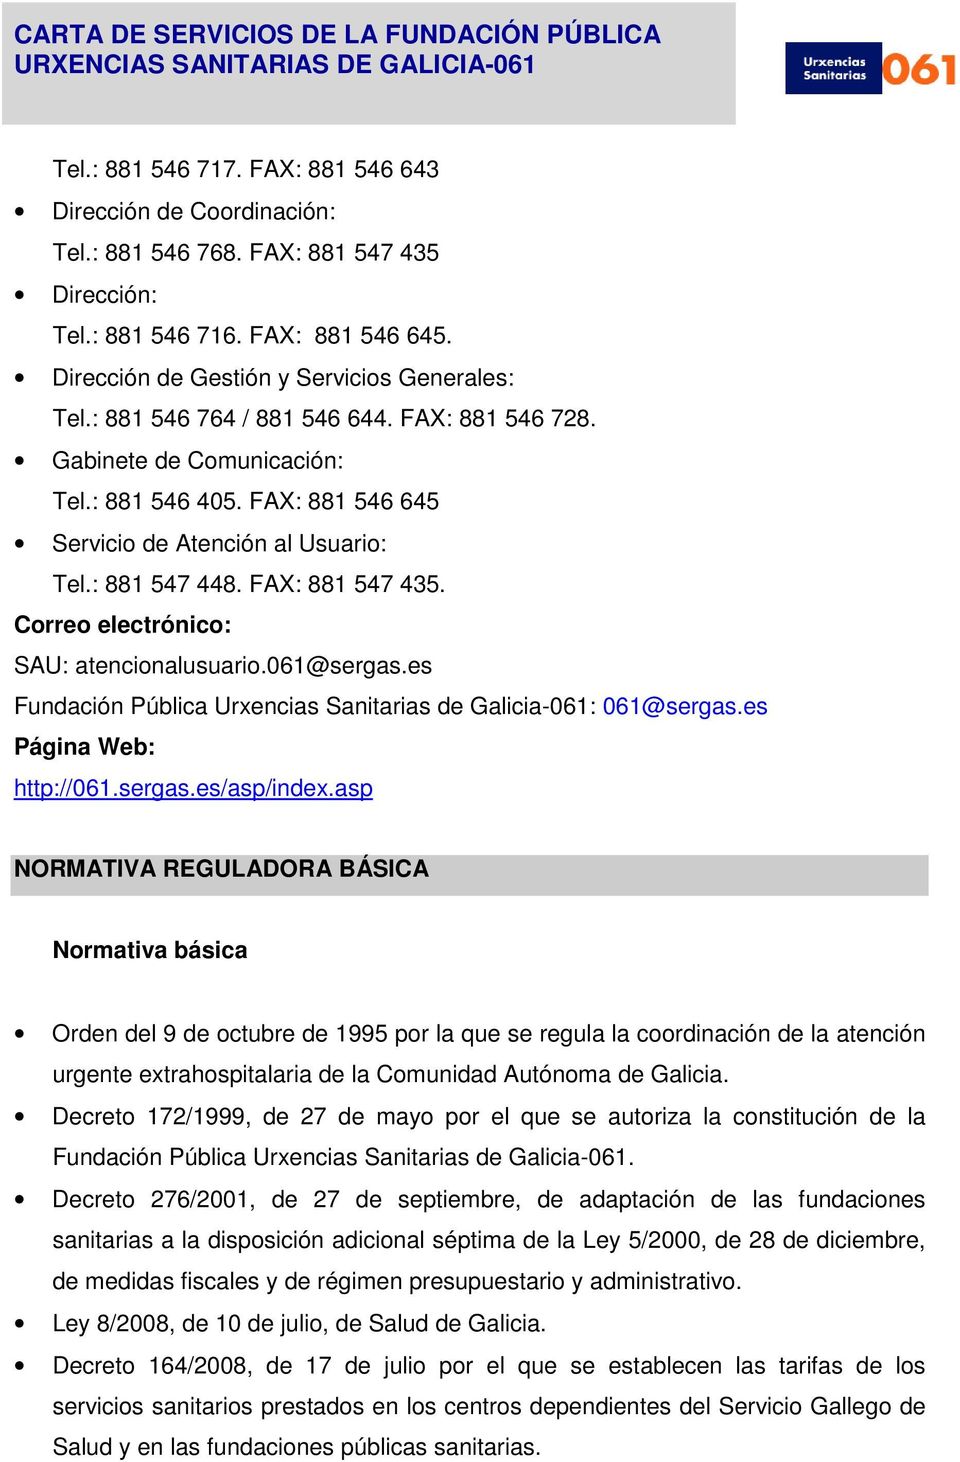 Correo electrónico: SAU: atencionalusuario.061@sergas.es Fundación Pública Urxencias Sanitarias de Galicia-061: 061@sergas.es Página Web: http://061.sergas.es/asp/index.